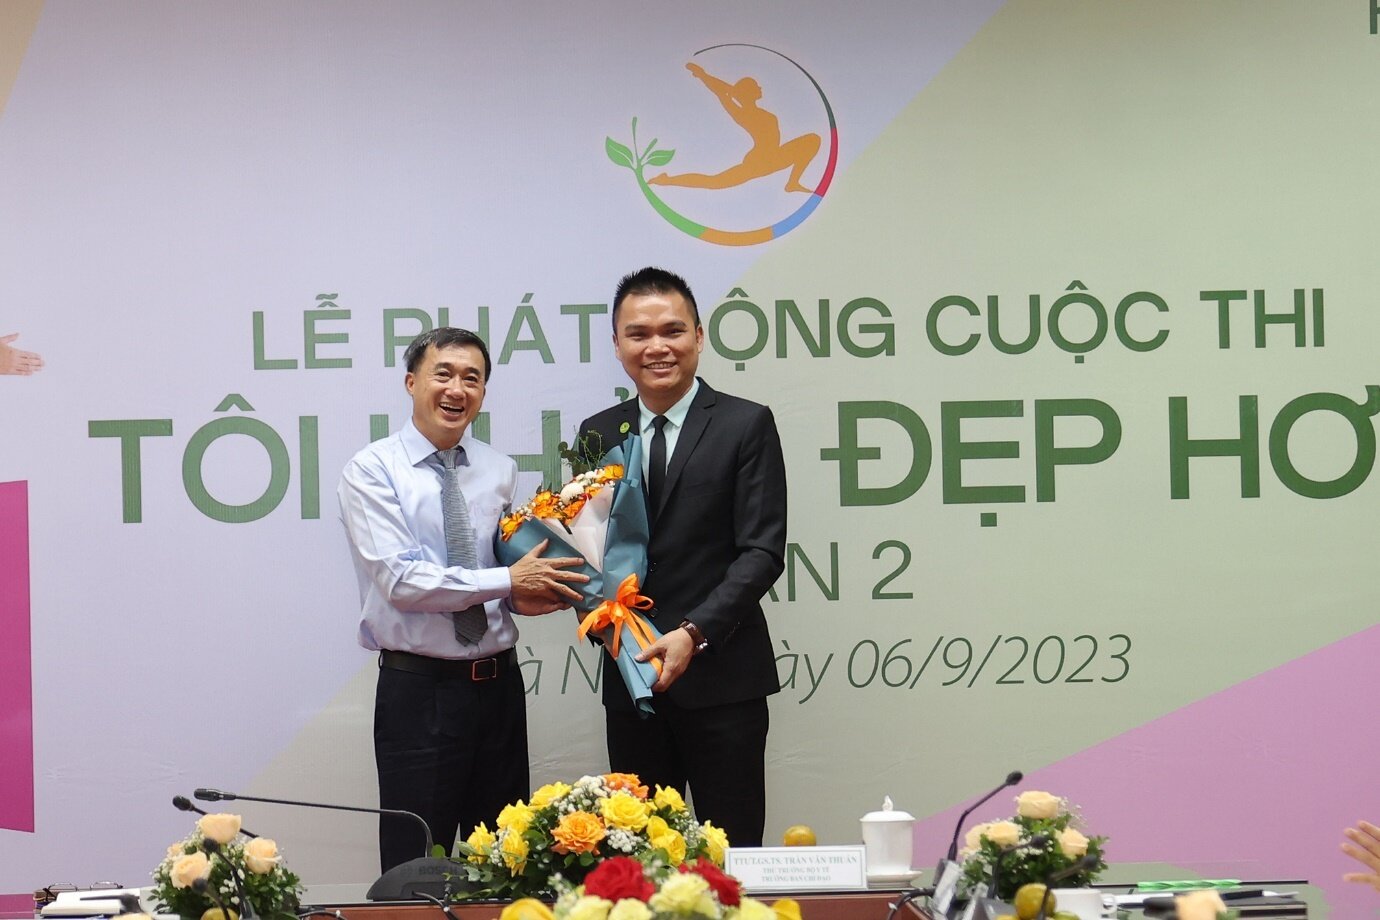 Thứ trưởng Bộ Y tế, Trưởng Ban Chỉ đạo cuộc thi “Tôi khỏe đẹp hơn” lần 2 tặng hoa cho đại diện Herbalife Việt Nam.